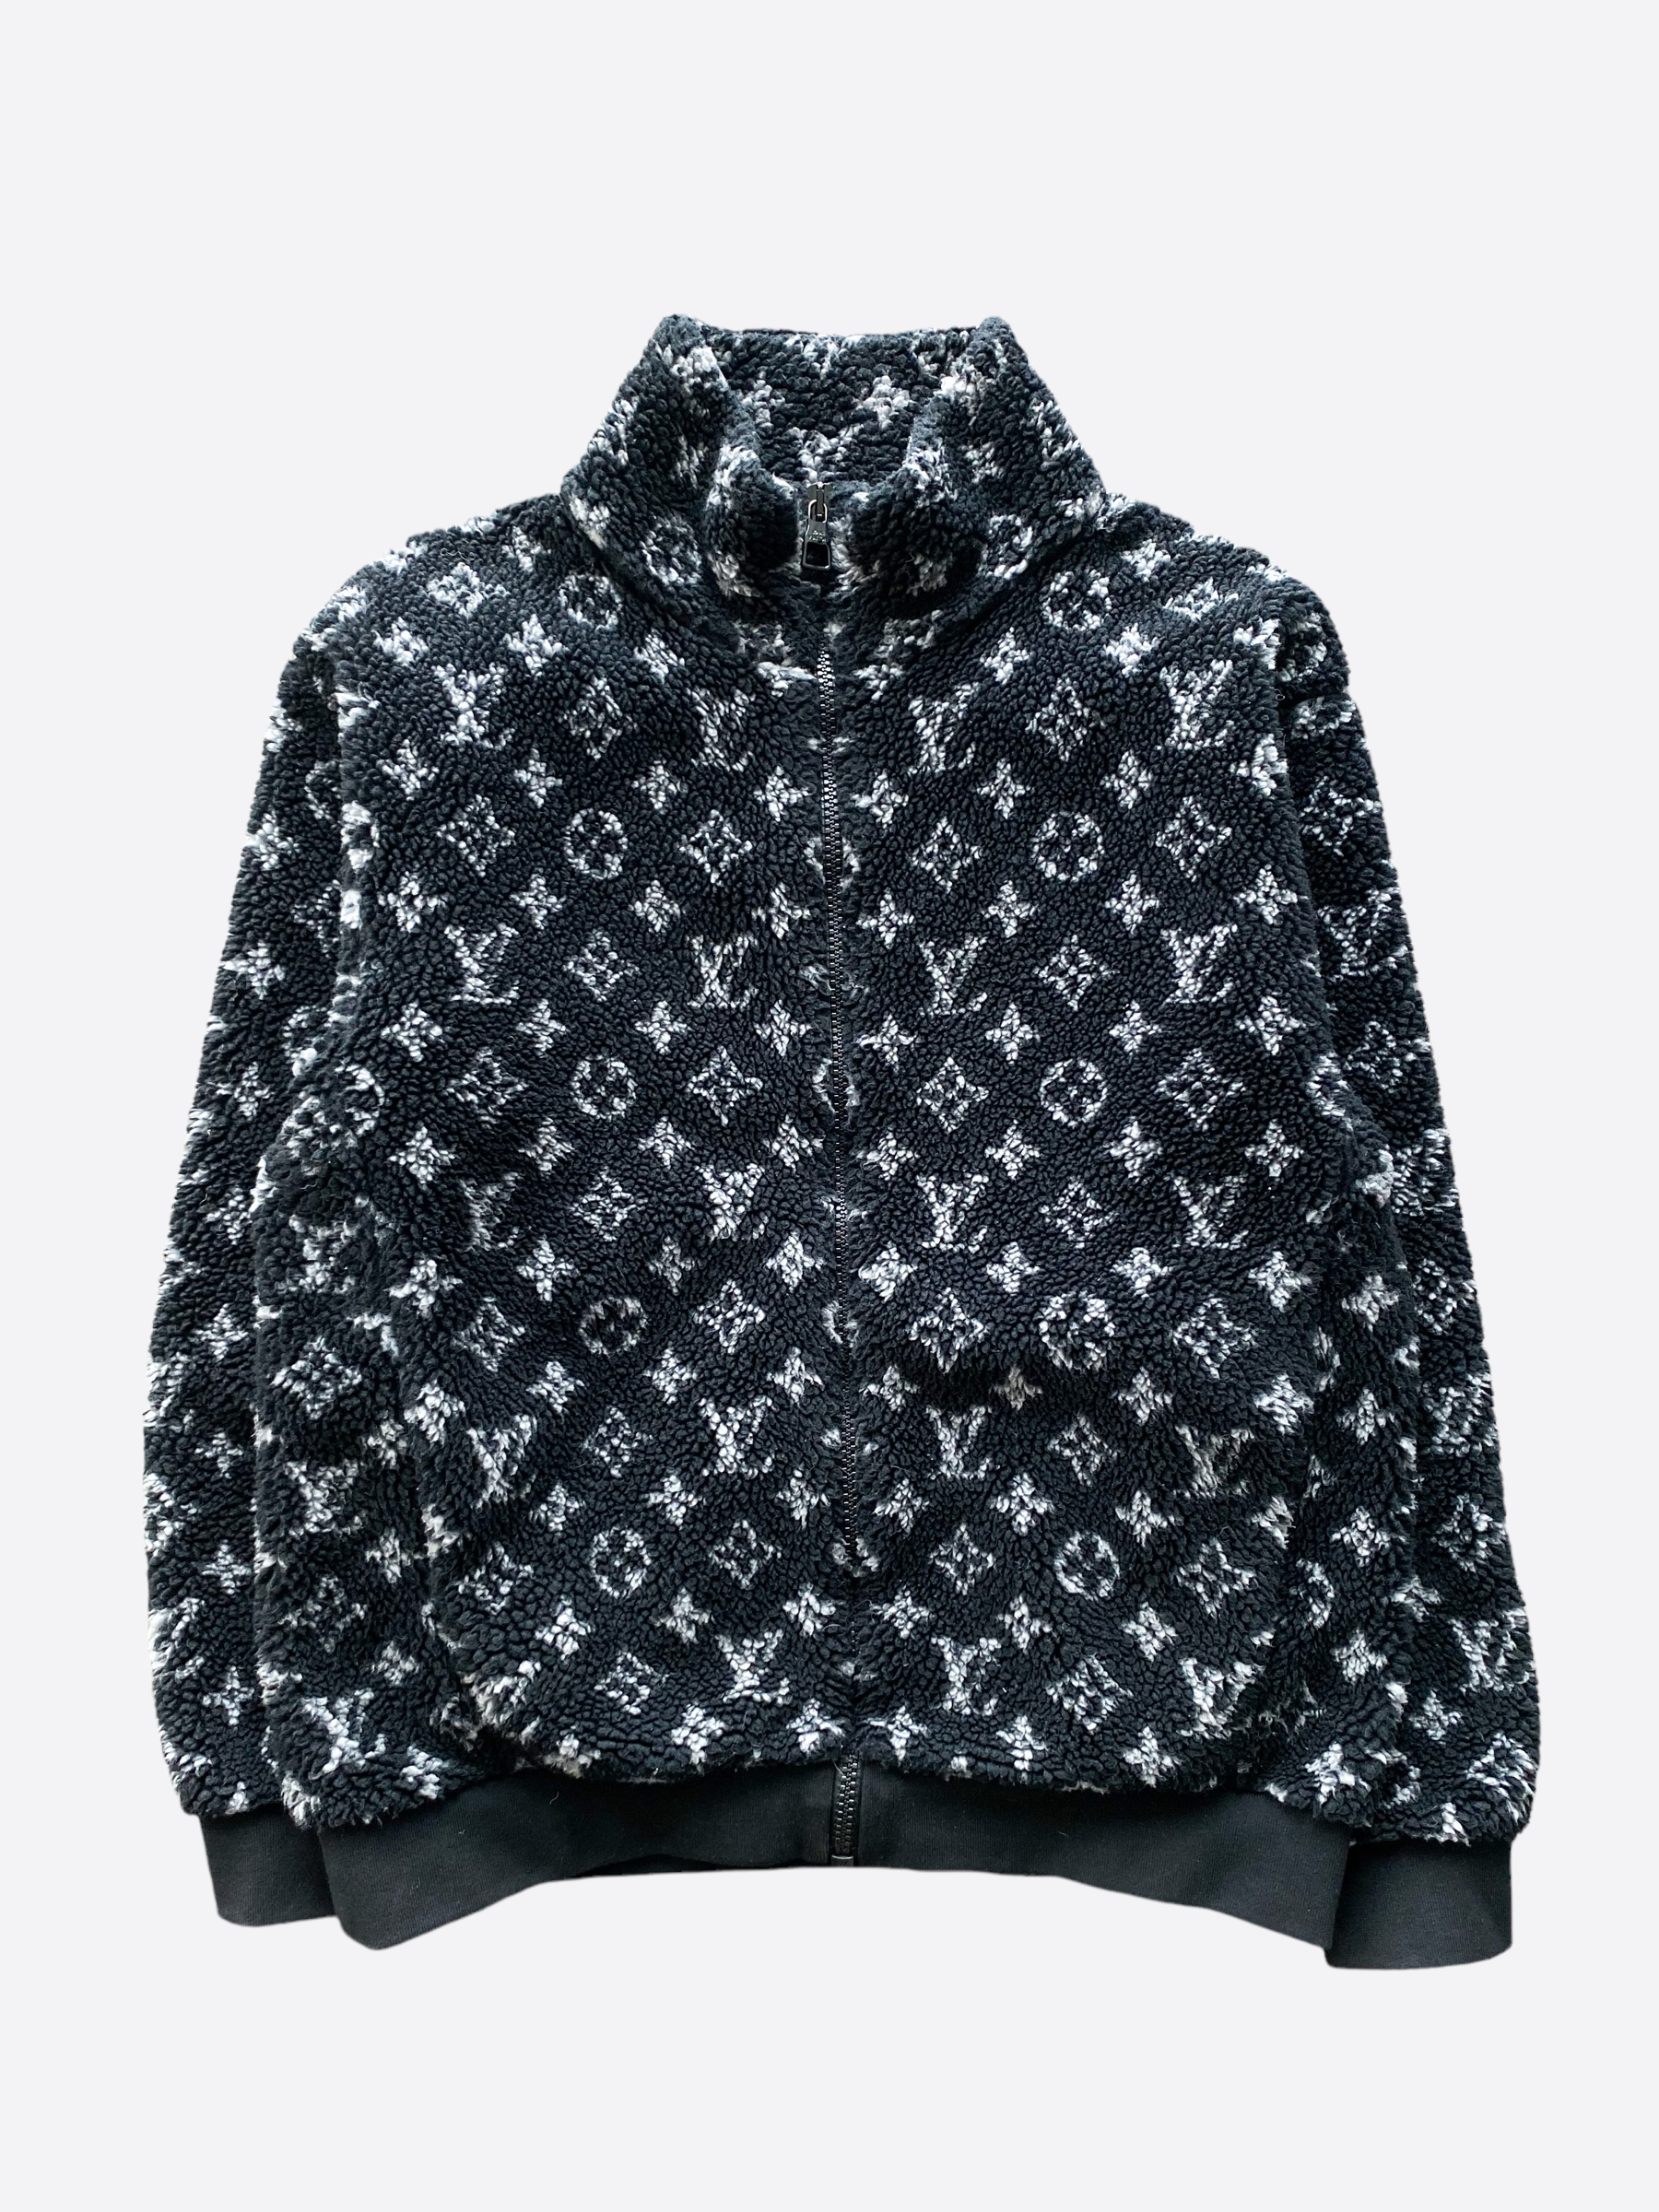 Louis Vuitton Men's Zip Up Teddy Jacket Monogram Polyester Fleece